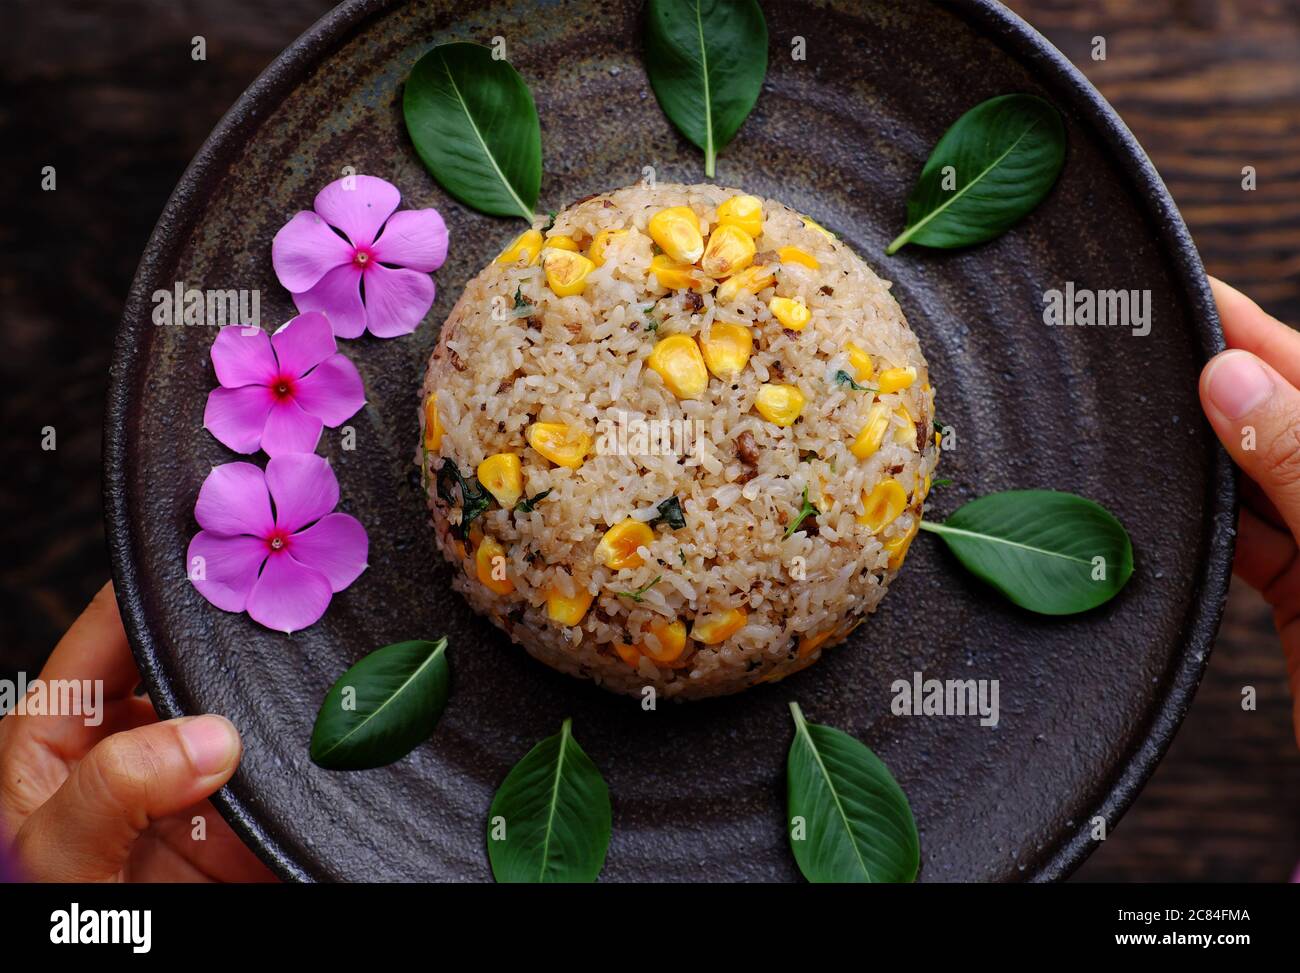 Piatto vista dall'alto di riso fritto vegano vietnamita con mais giallo su sfondo scuro, donna tenere a mano deliziosi piatti vegetariani fatti in casa pronti a mangiare Foto Stock